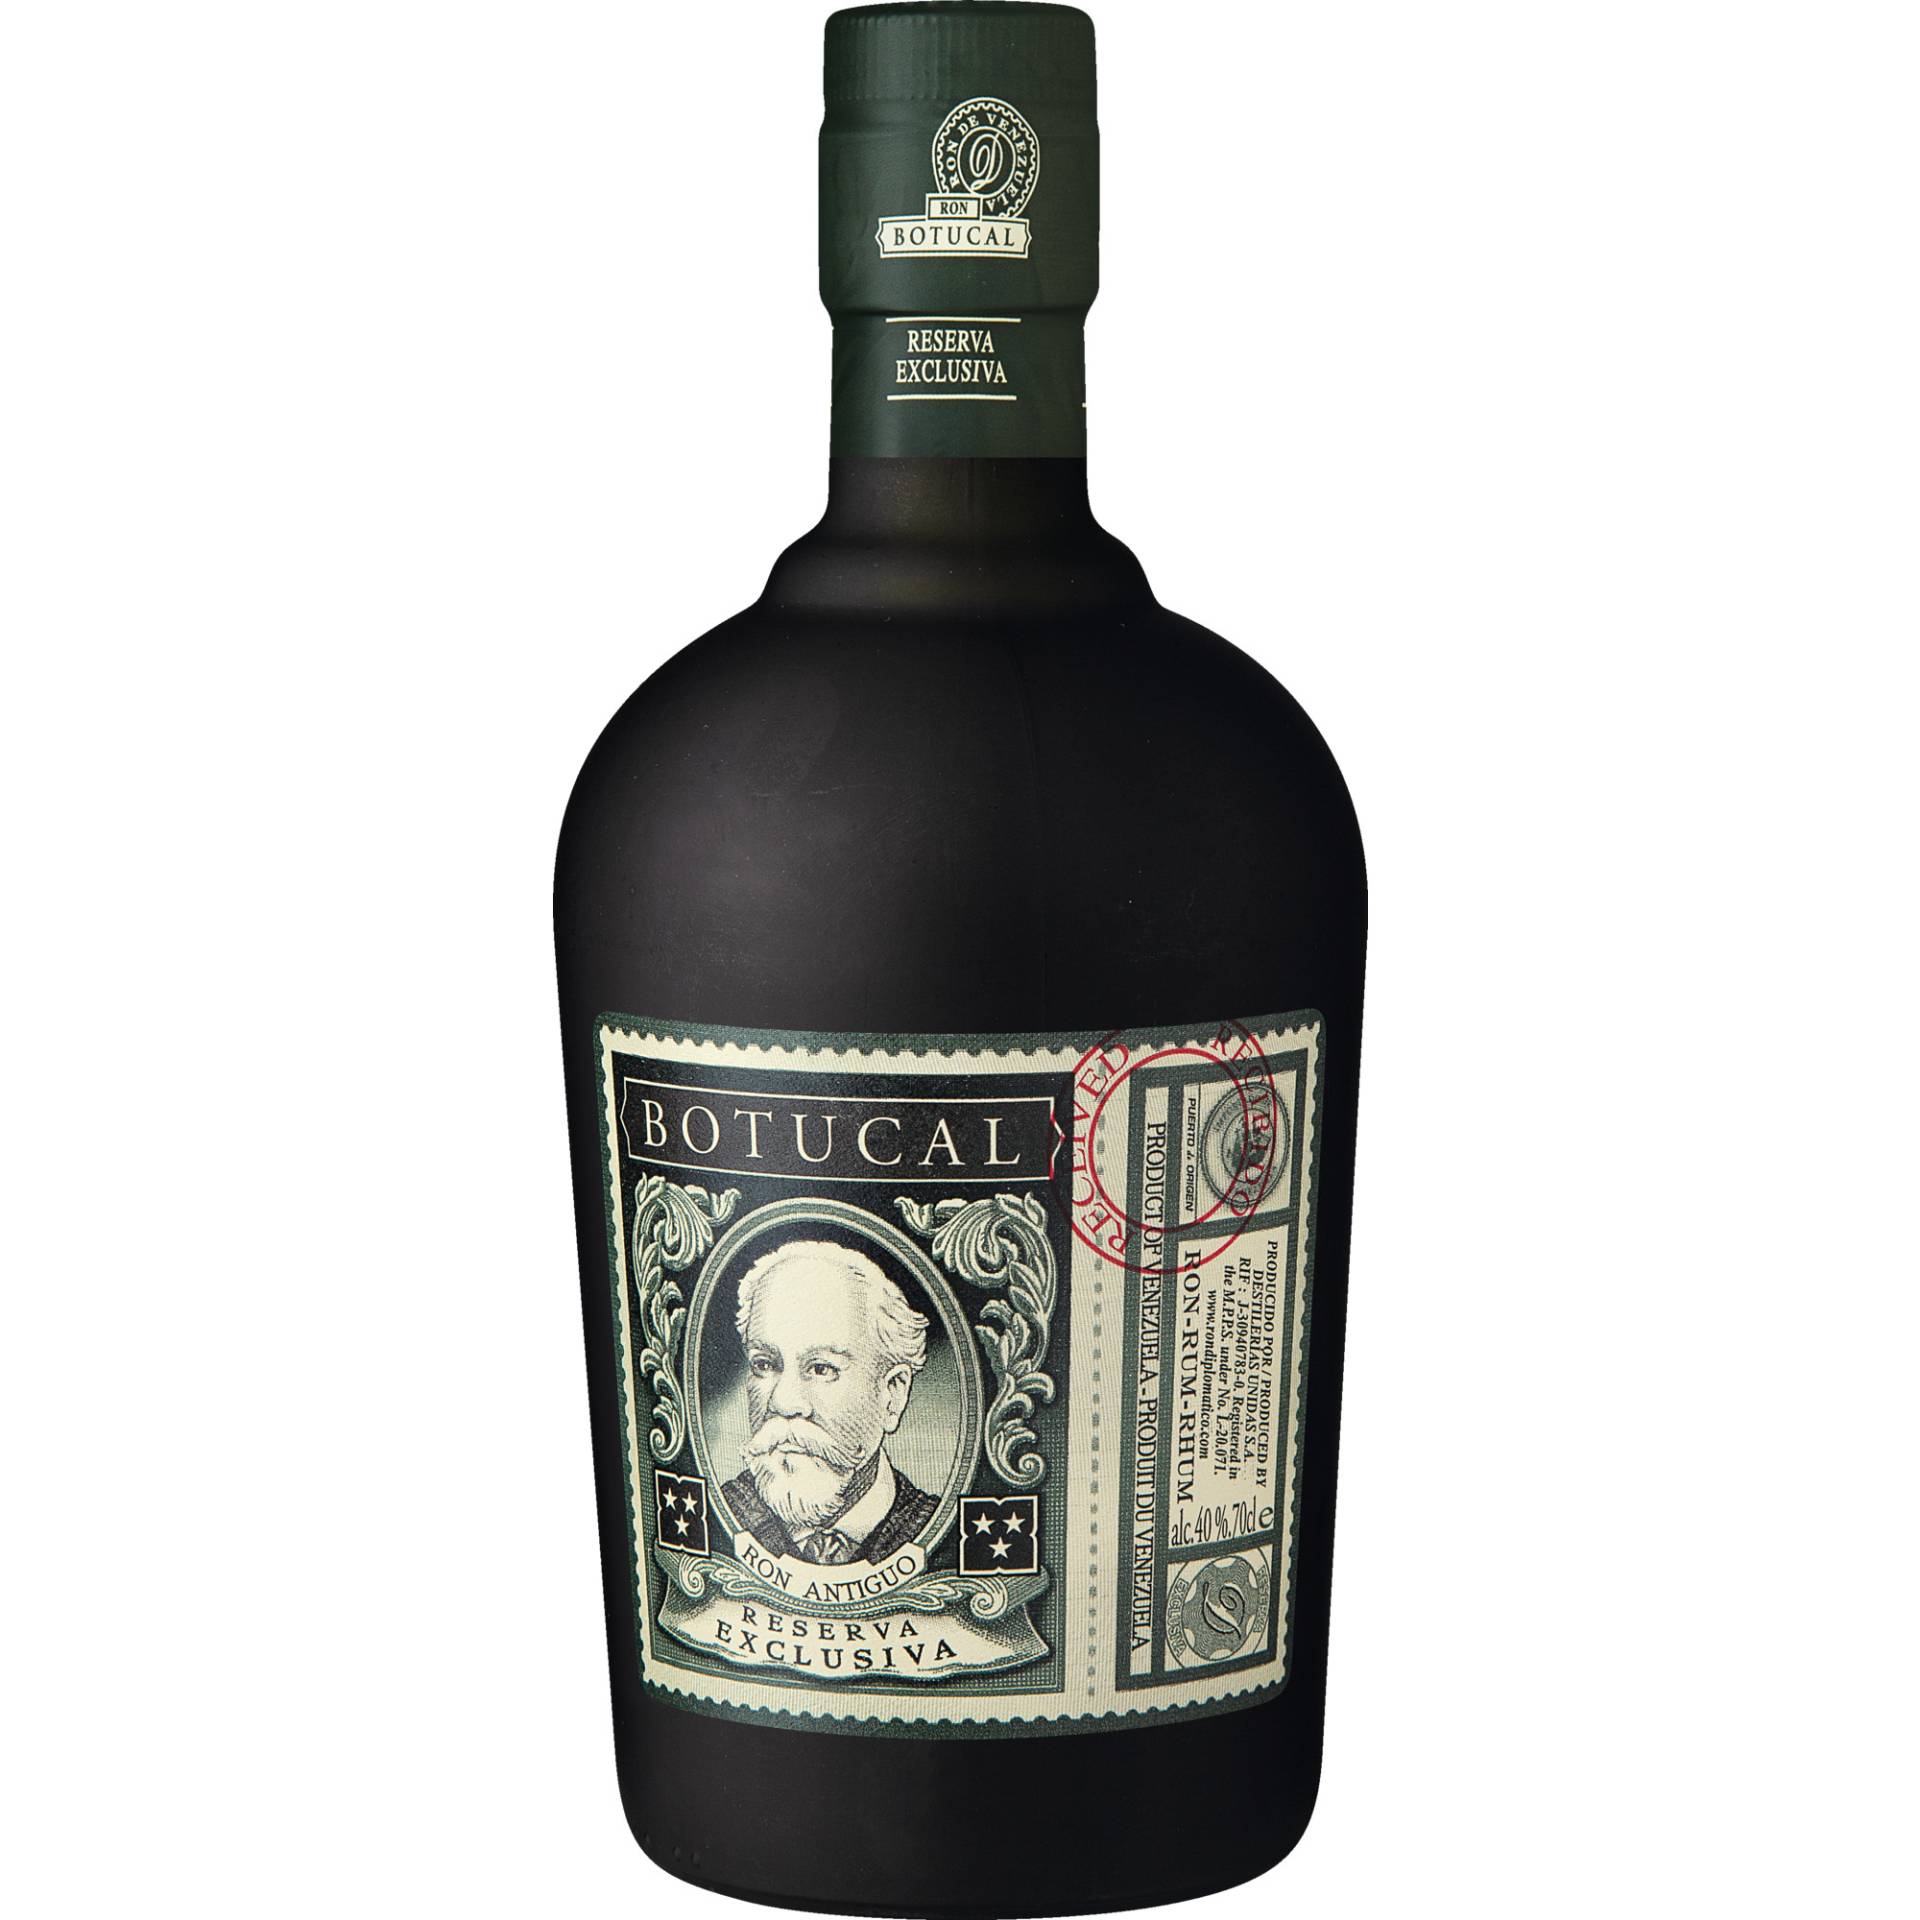 Botucal Rum Reserva Exclusiva, Venezuela, 0,7 L, 40% Vol., in Geschenkverpackung, Spirituosen von Brown-Forman Deutschland, Dammtorwall 7, D-20354 Hamburg